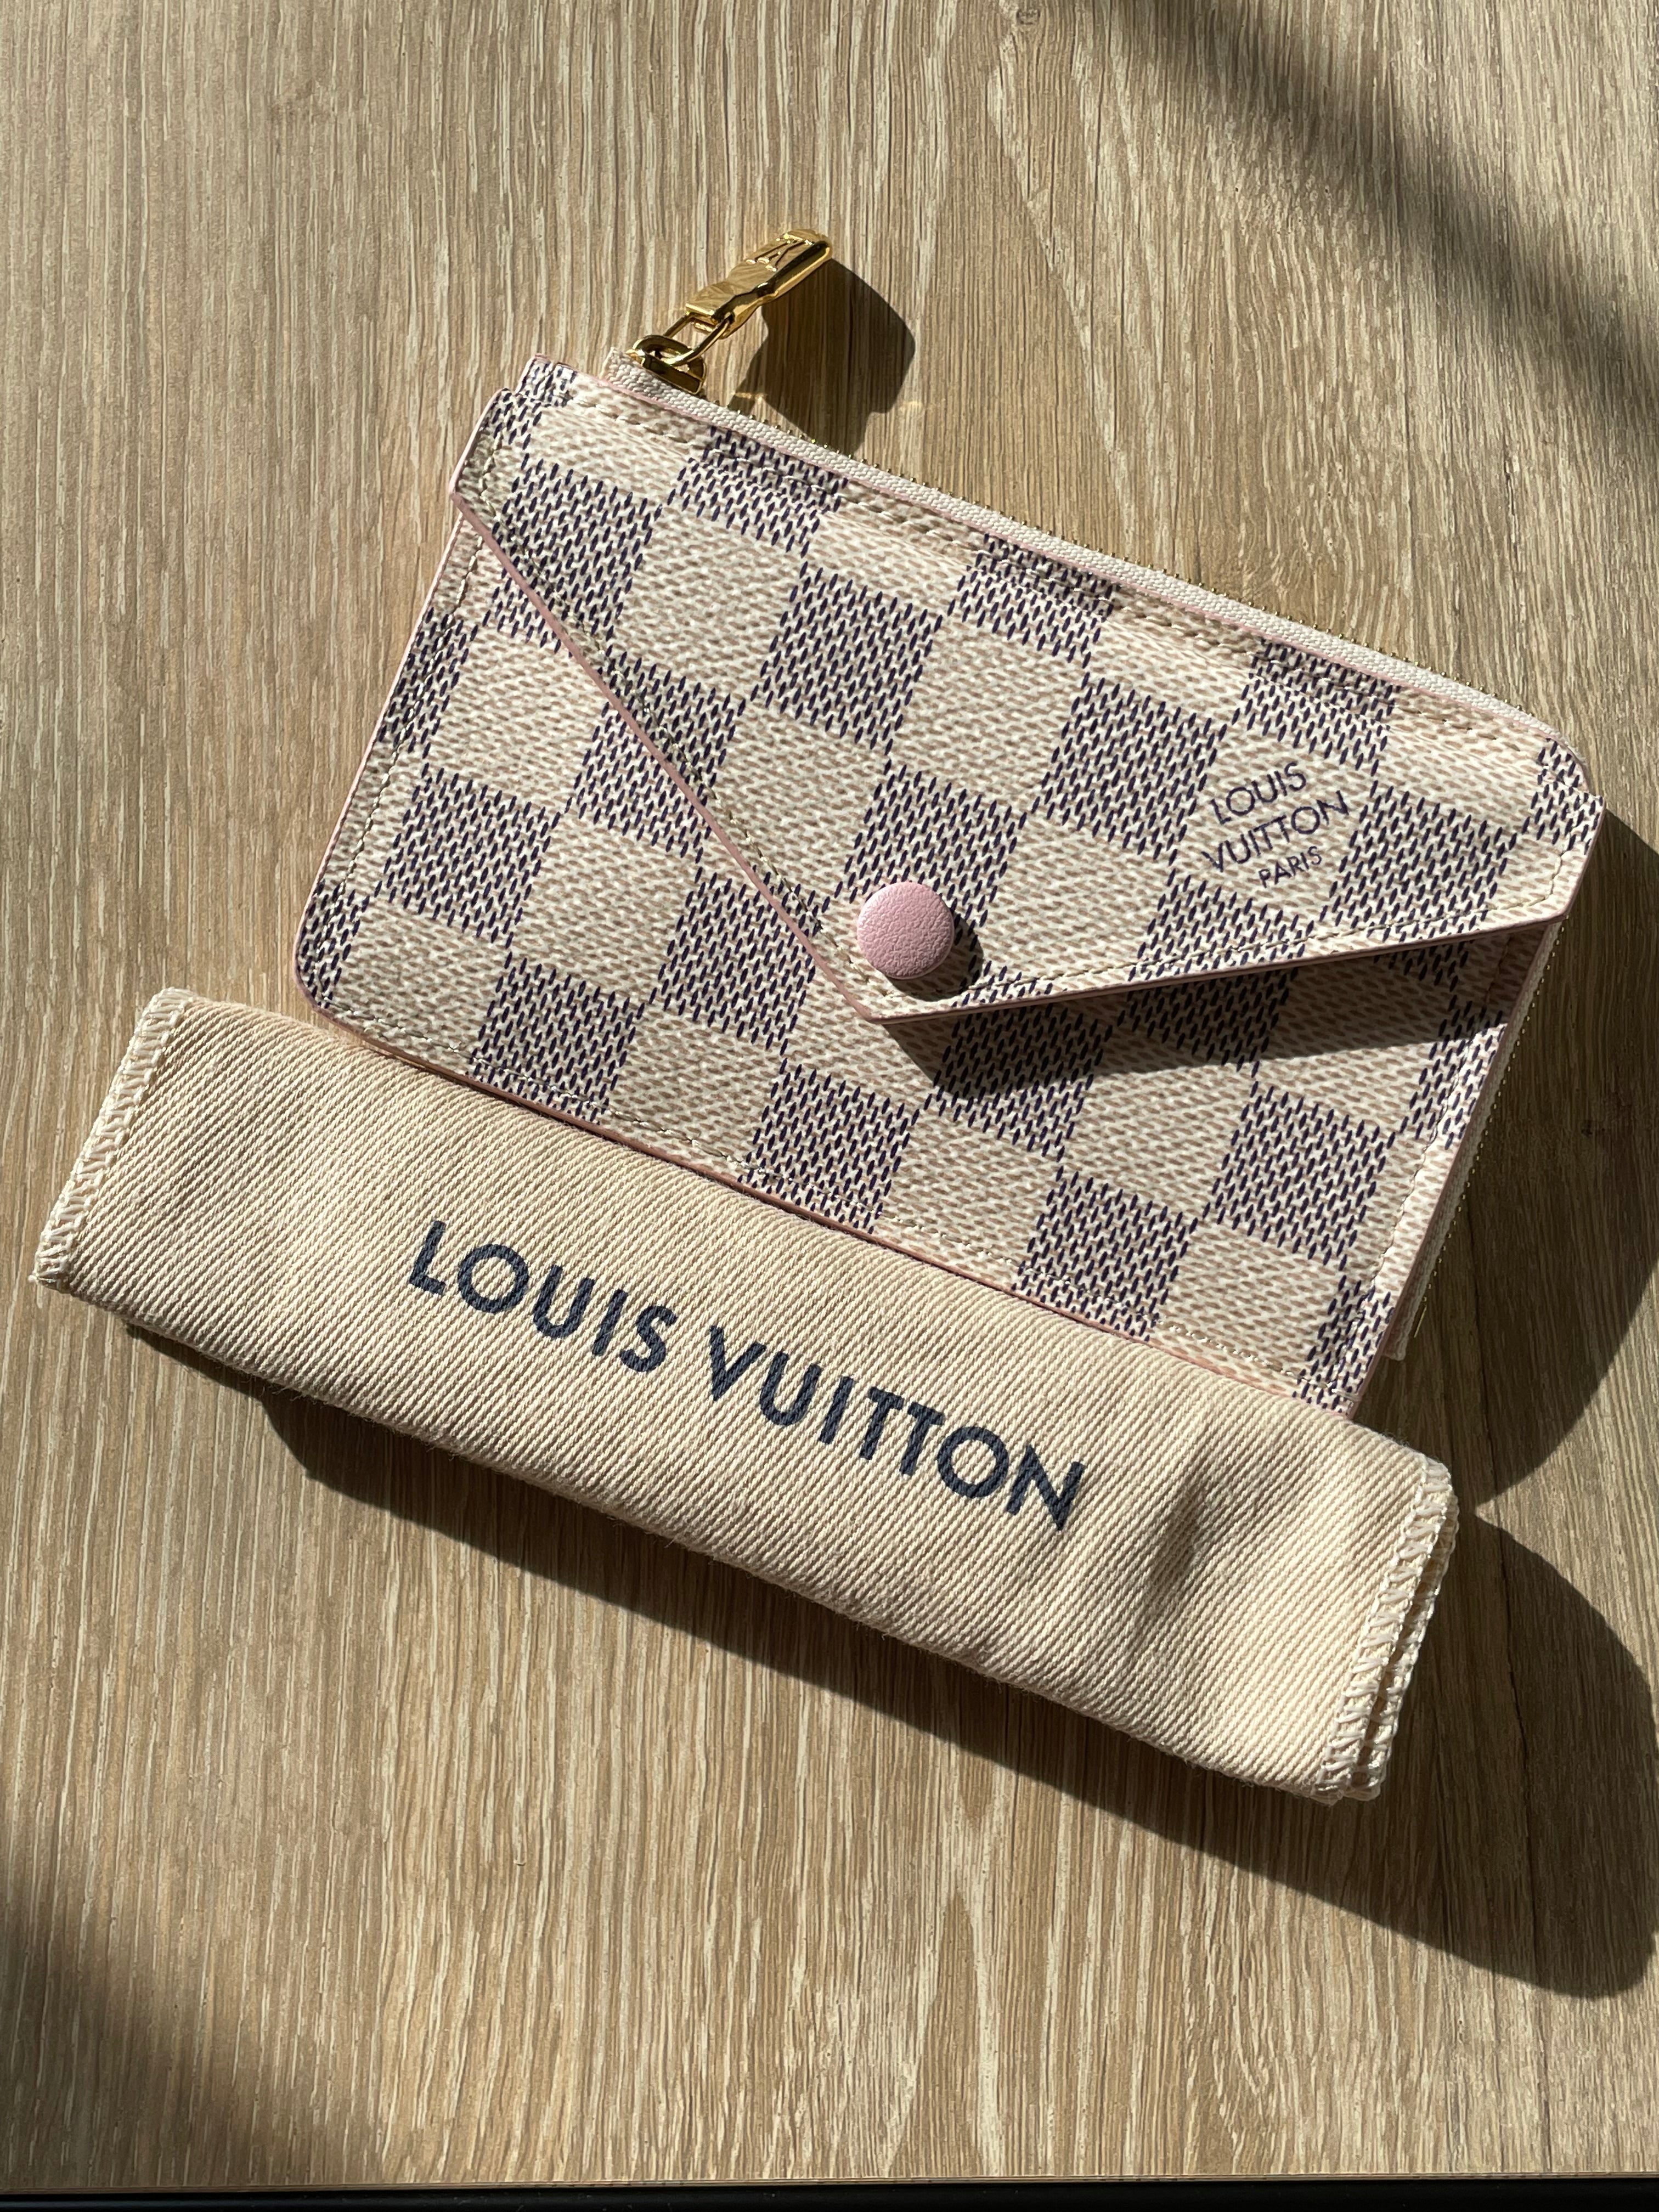 Louis Vuitton Damier Azur Victorine Wallet Rose Ballerine